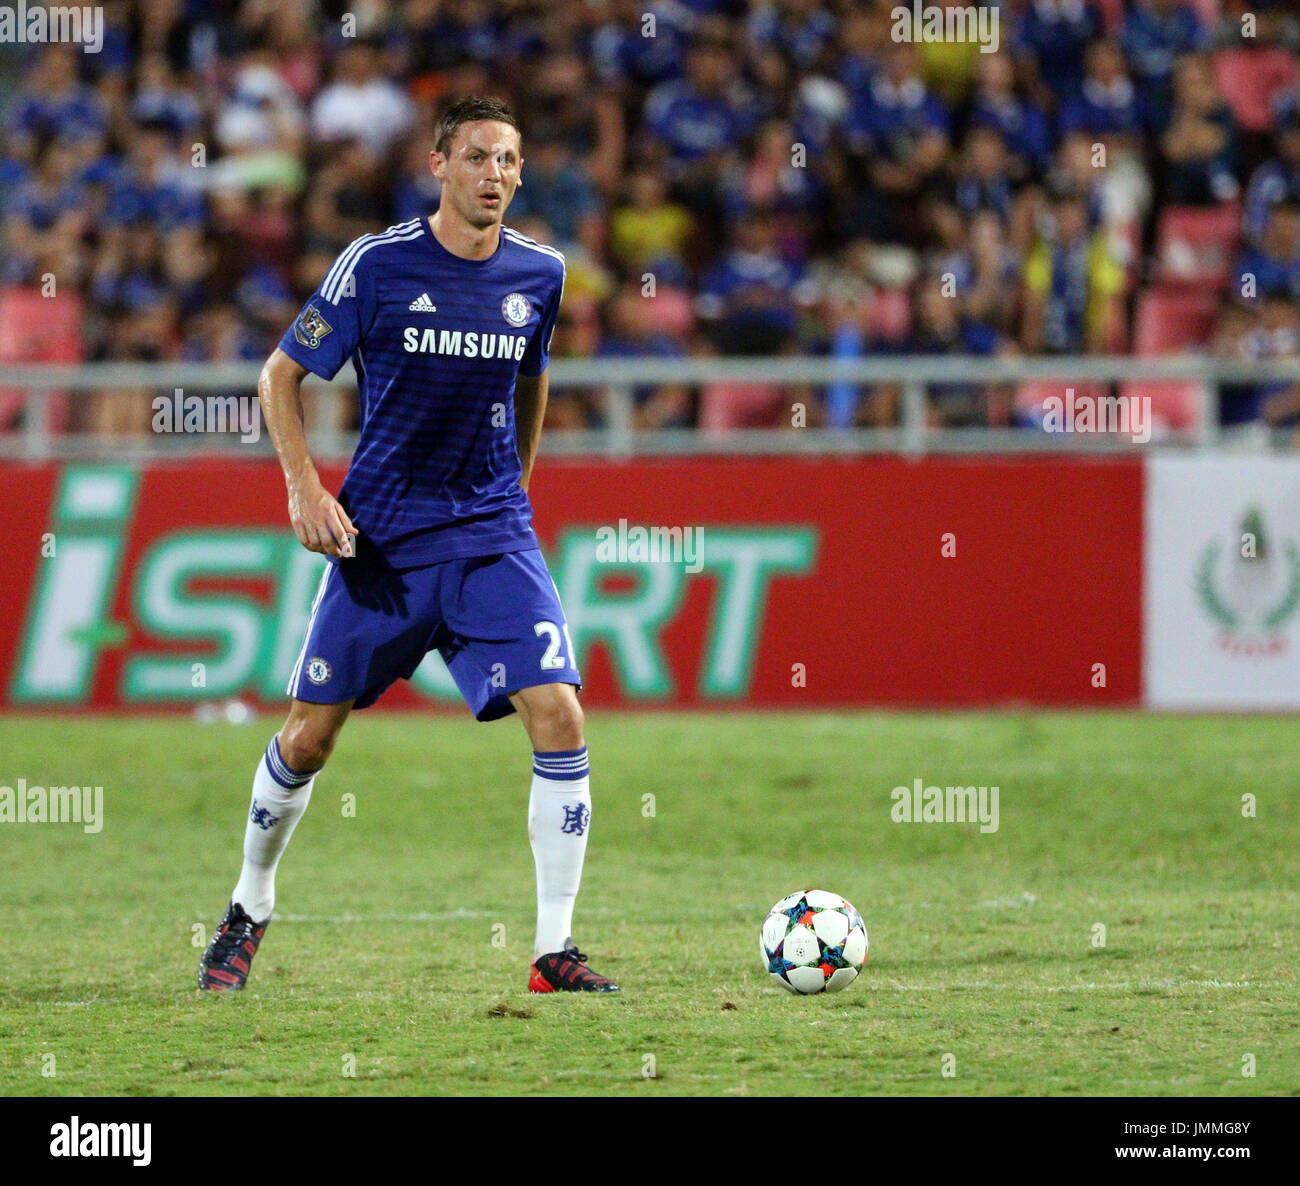 BANGKOK - Mai 30:Nemanja Matic de Chelsea en action pendant la célébration Singha FC Chelsea match au stade Rajamangala le 30 mai 2015 à Bangkok, Thaïlande. Banque D'Images